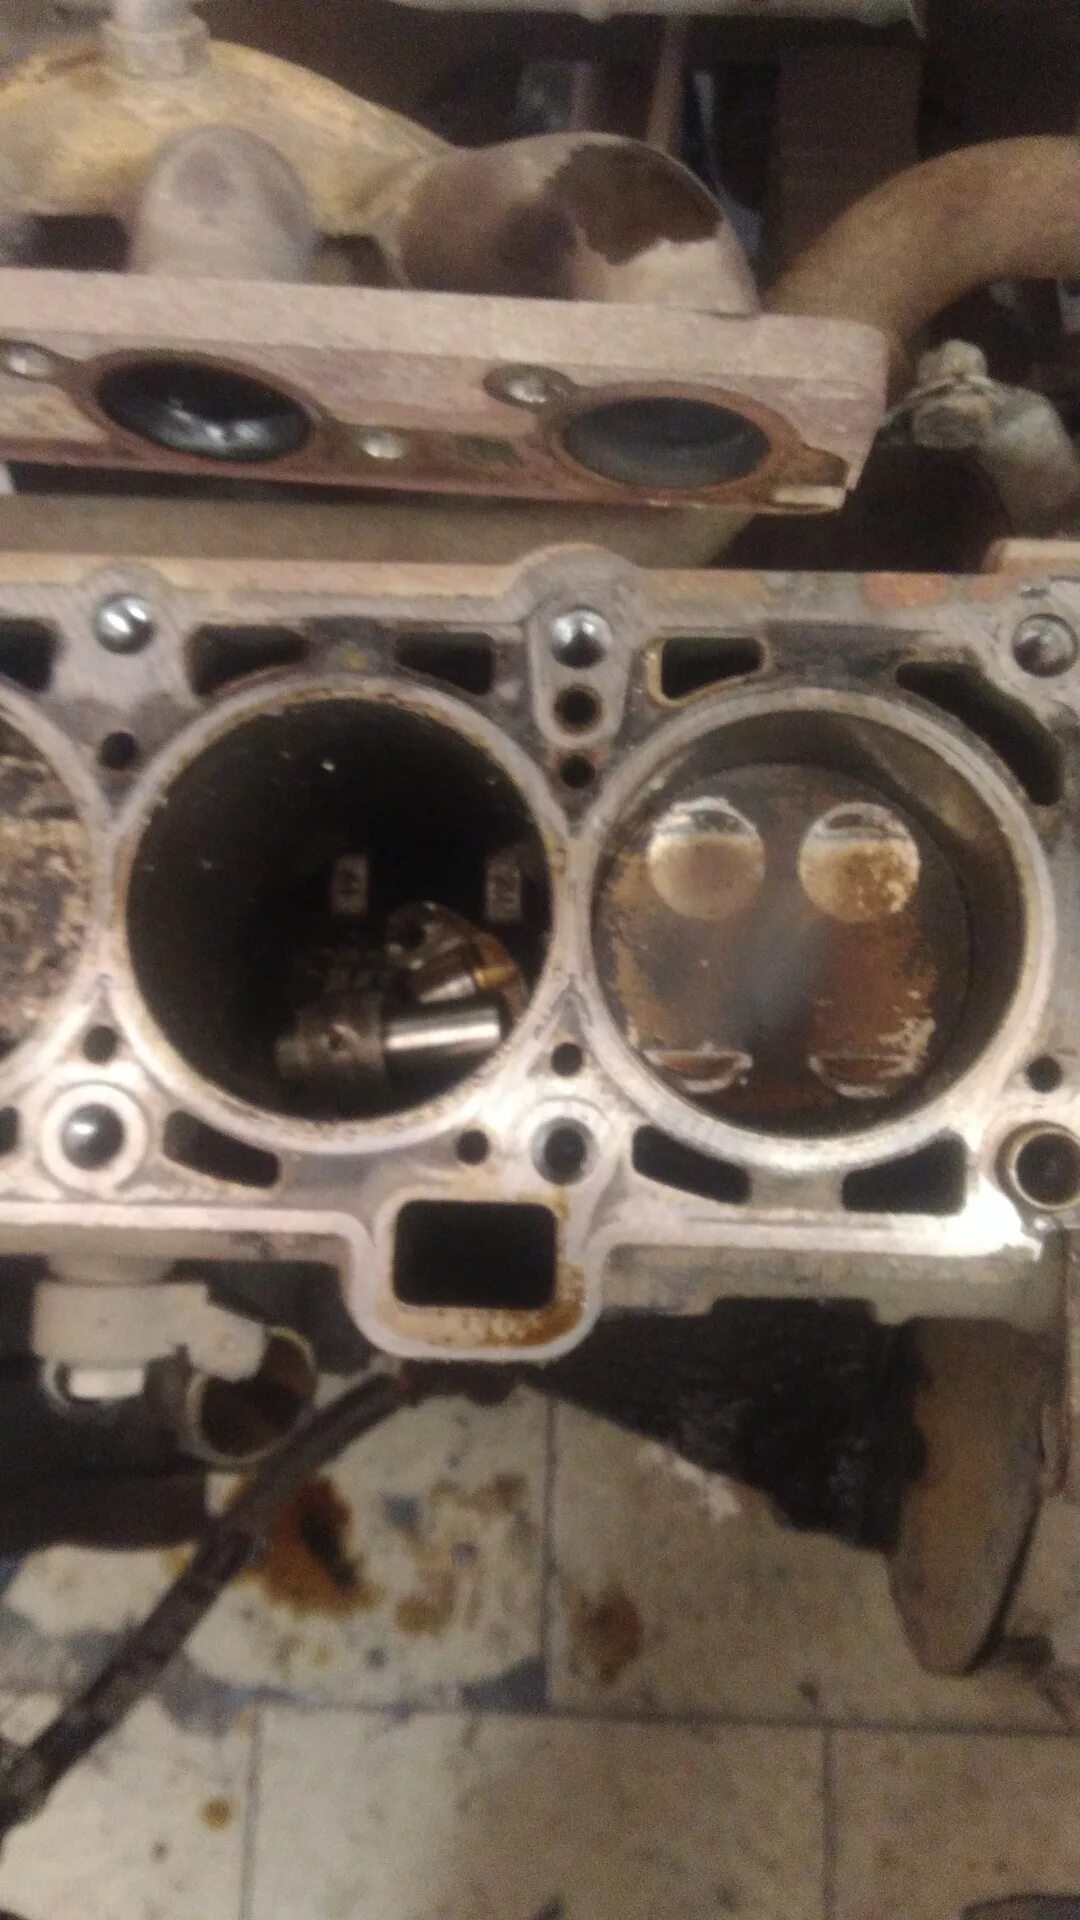 Двигатель Гранта 8 клапанов 11186 гнет ли клапана. Погнуло клапана Гранта 8 клапанная. Загнуло клапана Приора 16 клапанов. Погнуло клапана Гранта 8 клап. 106 двигатель гнет клапана